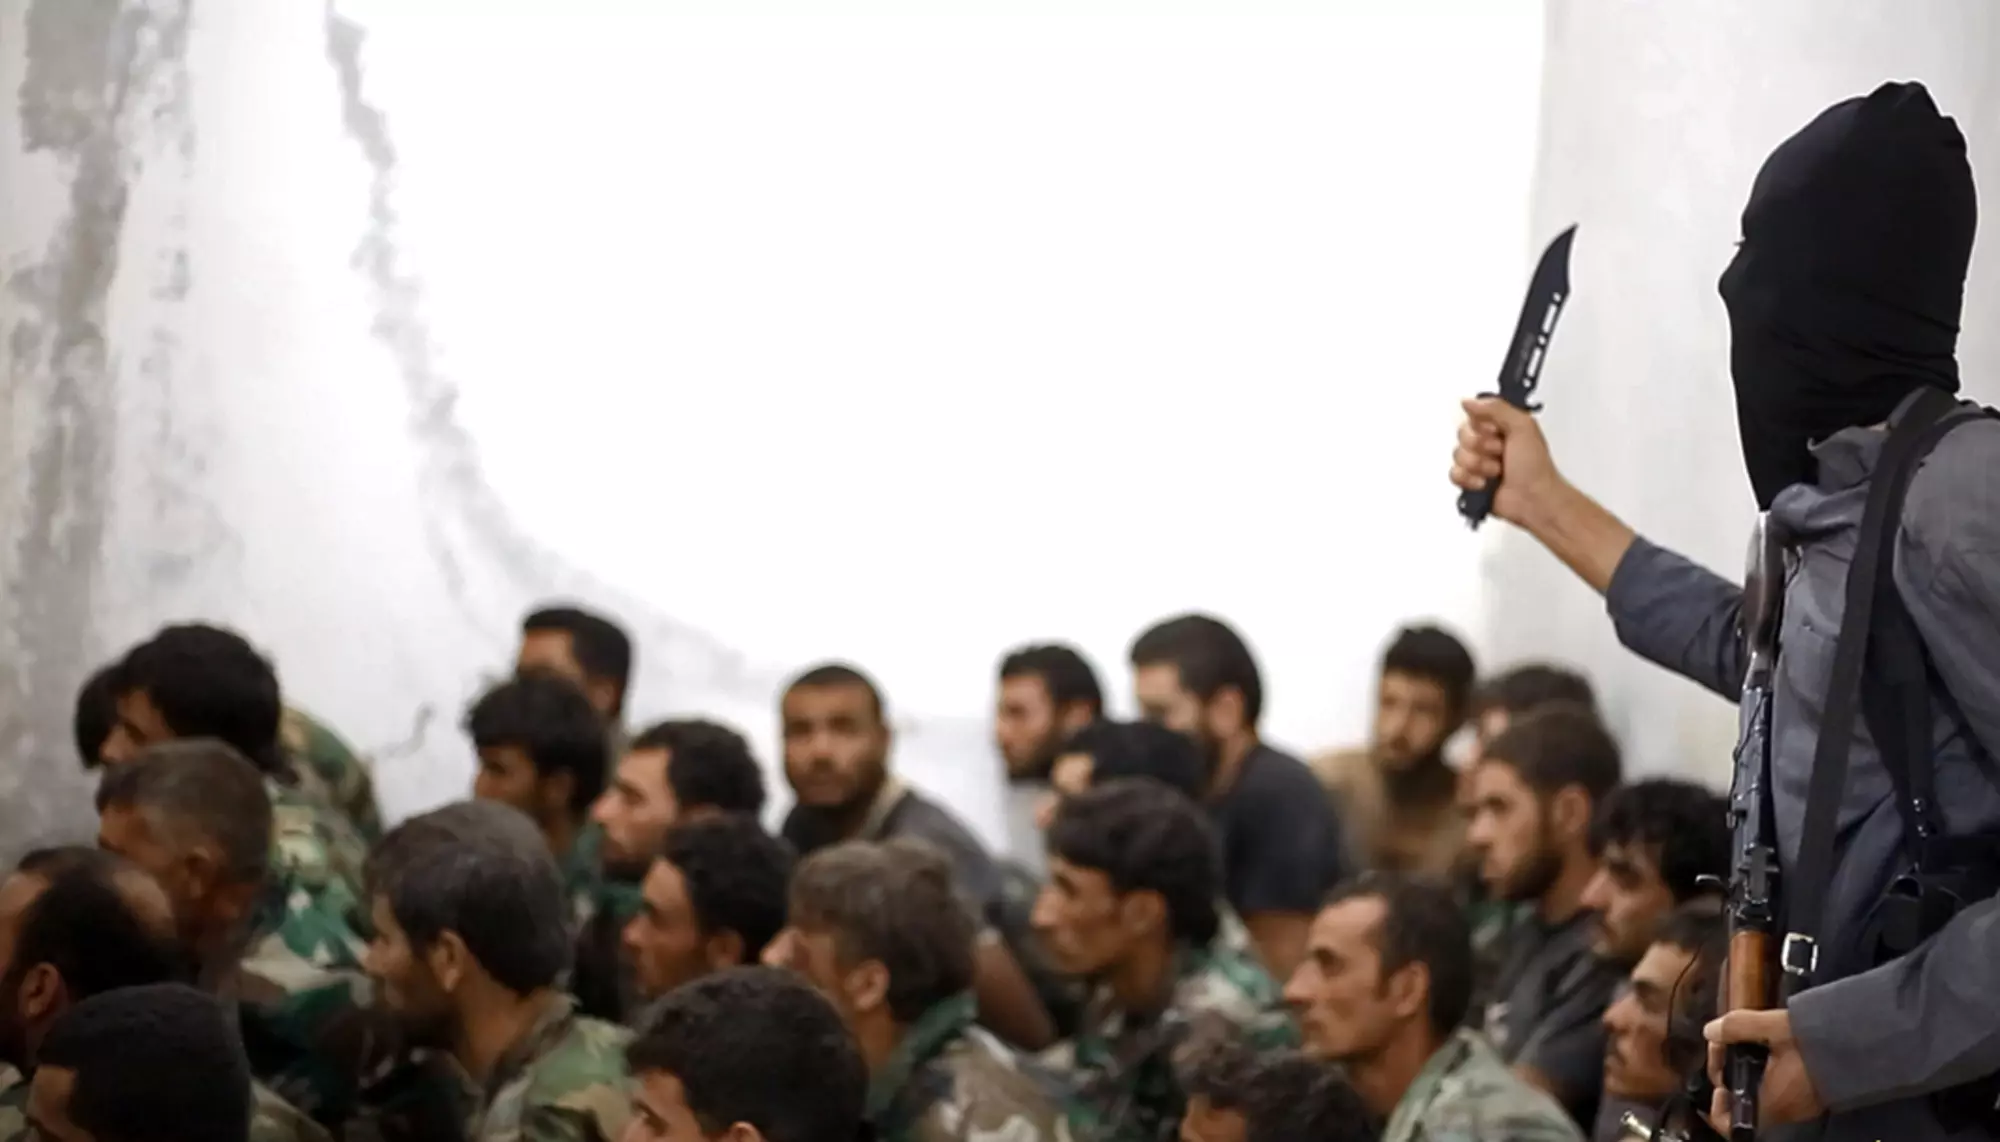 לוחם דאעש שומר על קבוצת חיילים שבויים בבסיס